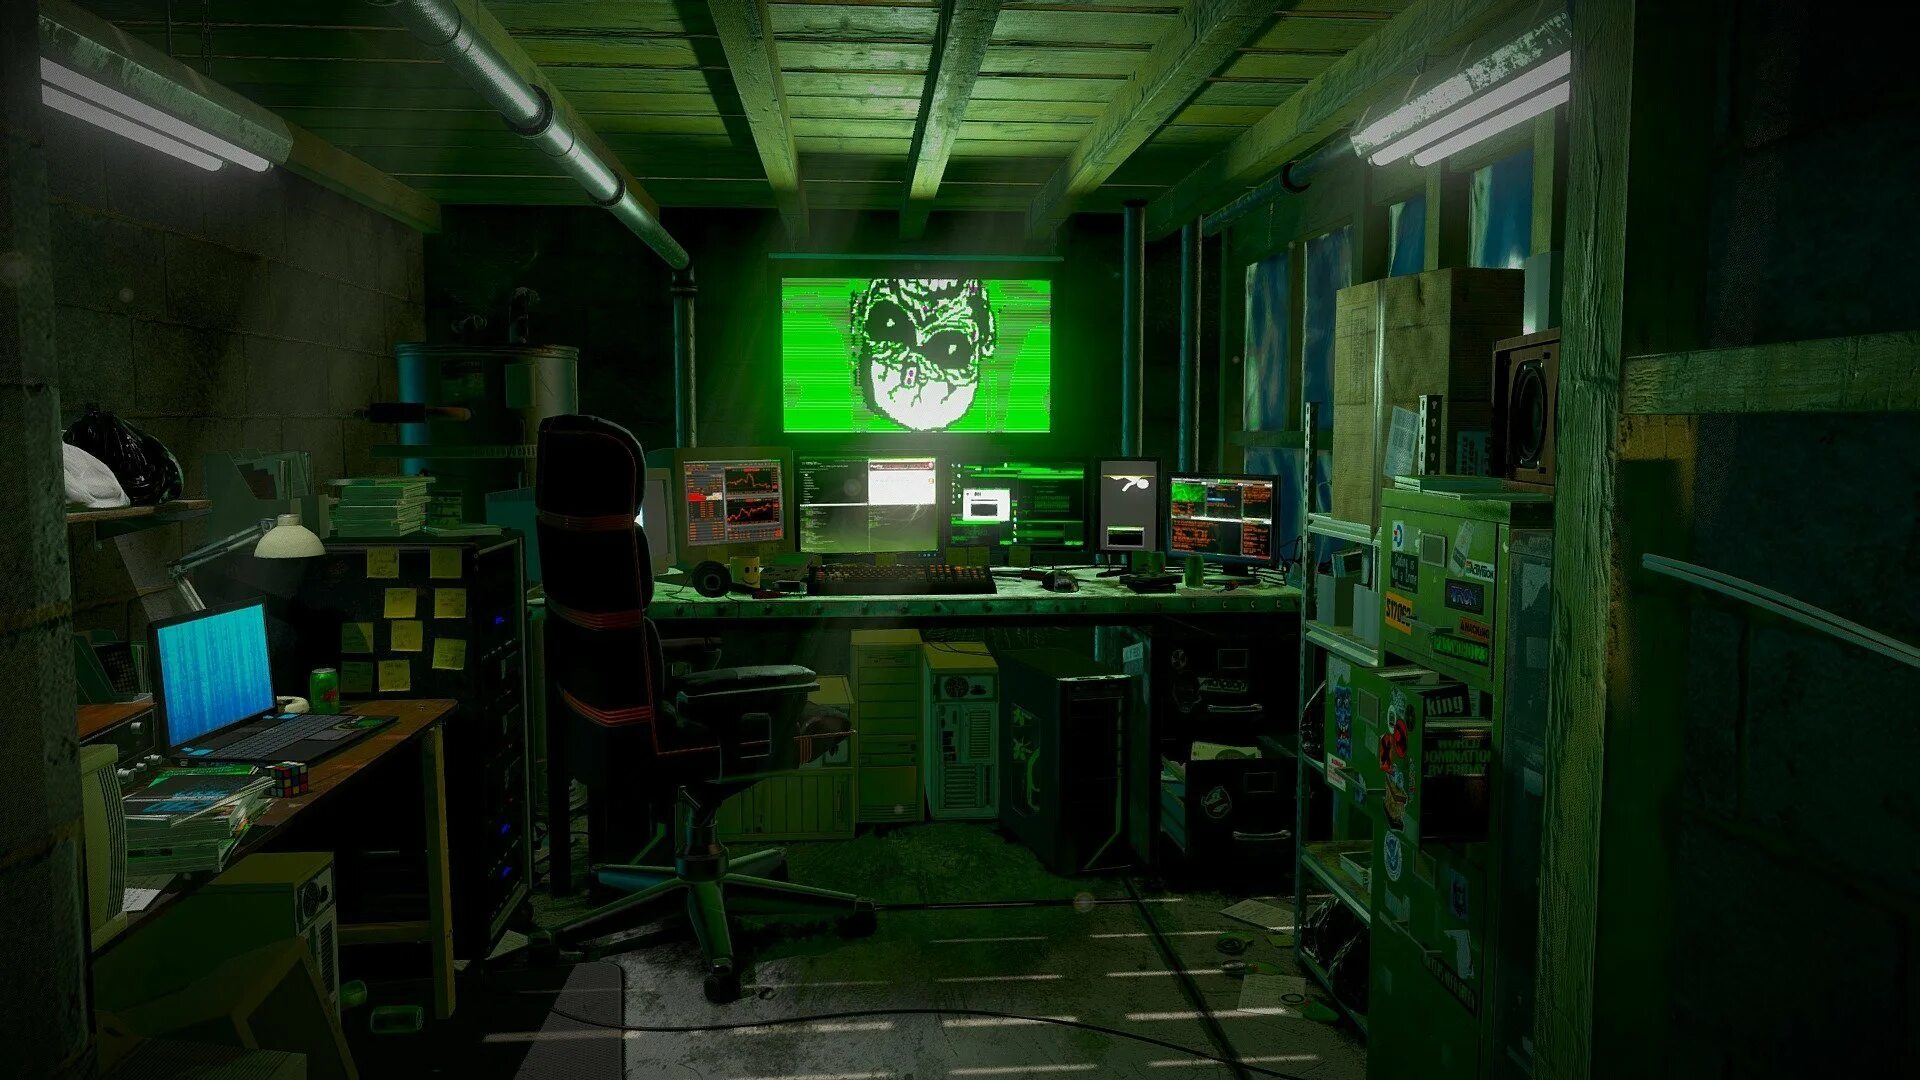 Хат бит. Комната хакера. Компьютерная комната. Рабочее место в стиле киберпанк. Лаборатория хакера комната.